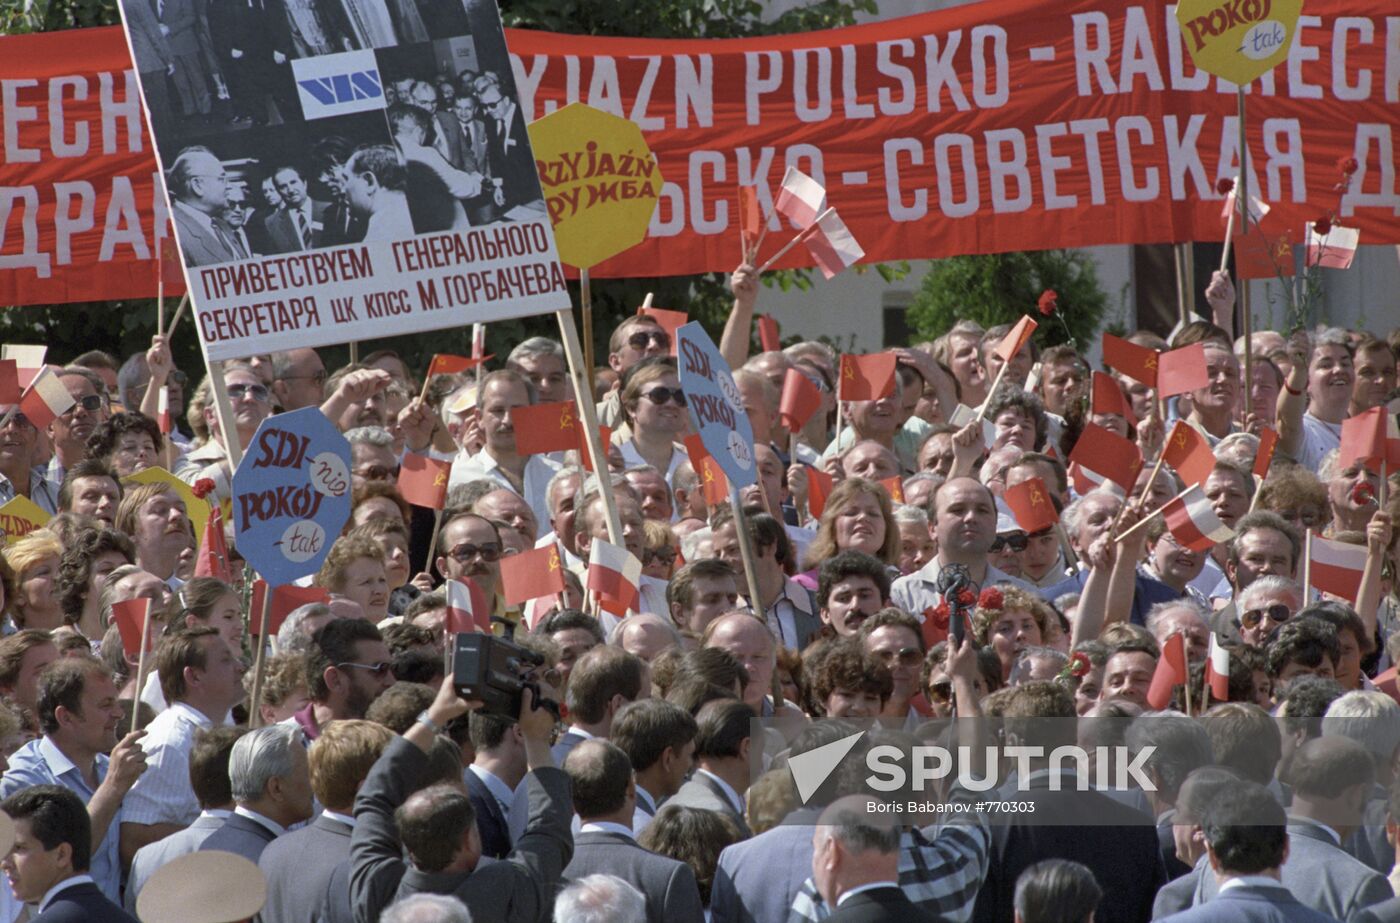 Warsaw residents greeting Mikhail Gorbachev